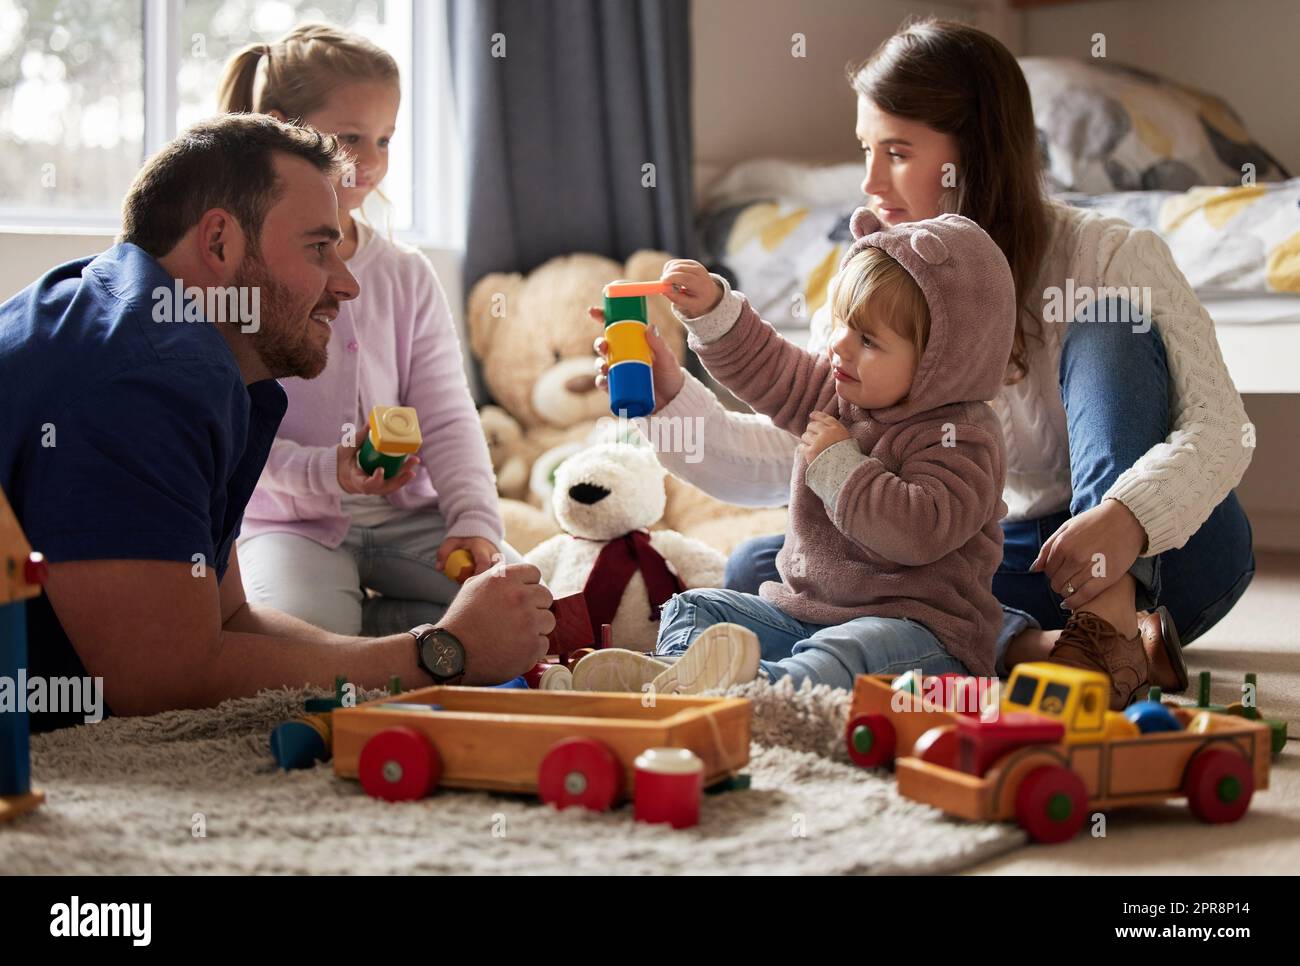 Es gibt nichts Wertvolleres als die Zeit der Familie. Eine junge Familie spielt zu Hause zusammen. Stockfoto